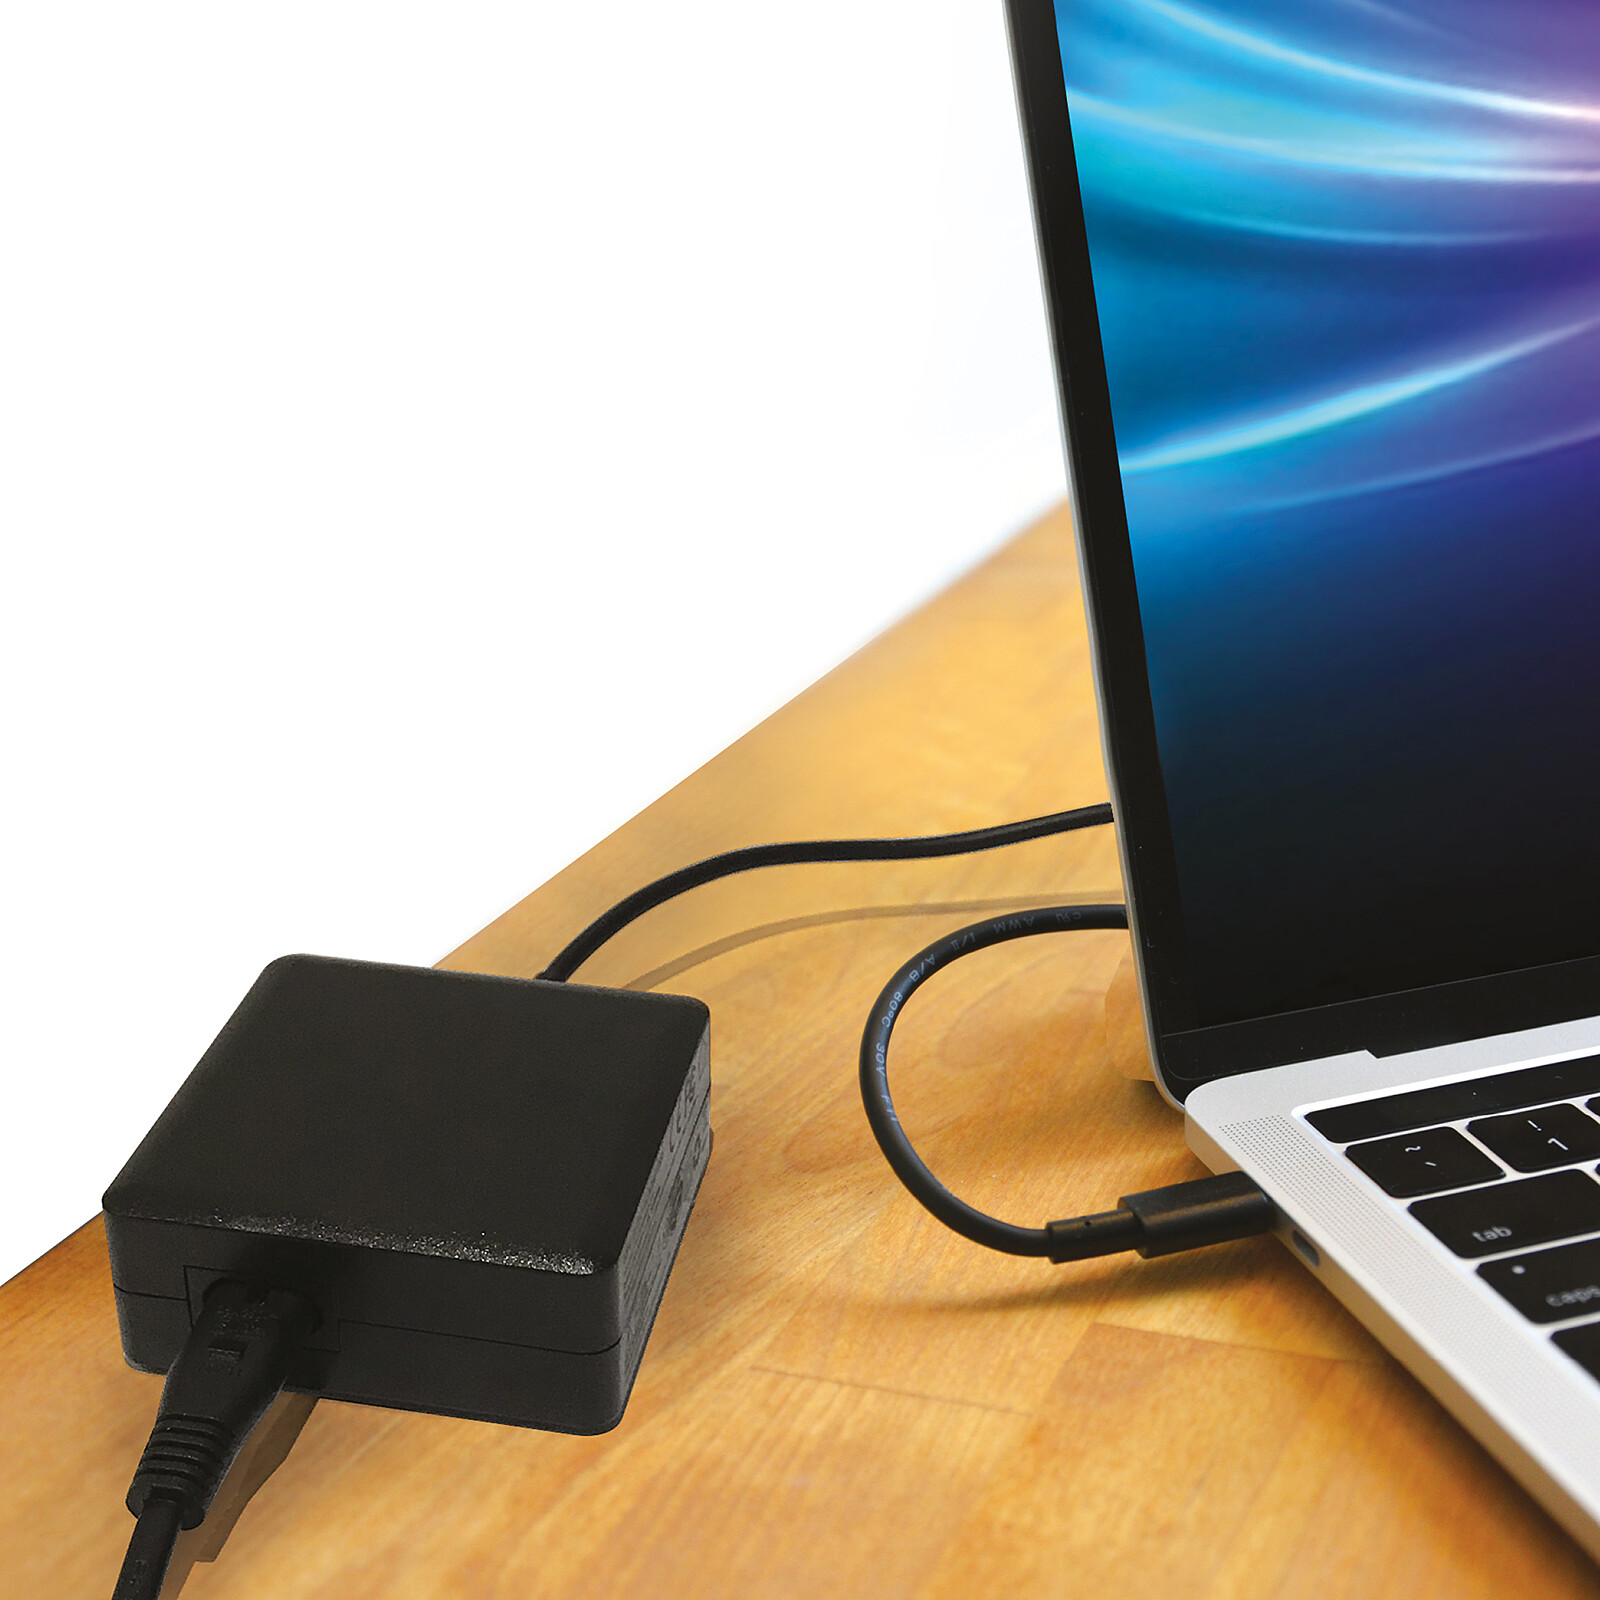 Chargeur ordinateur portable NEDIS universelle pour PC portable 15